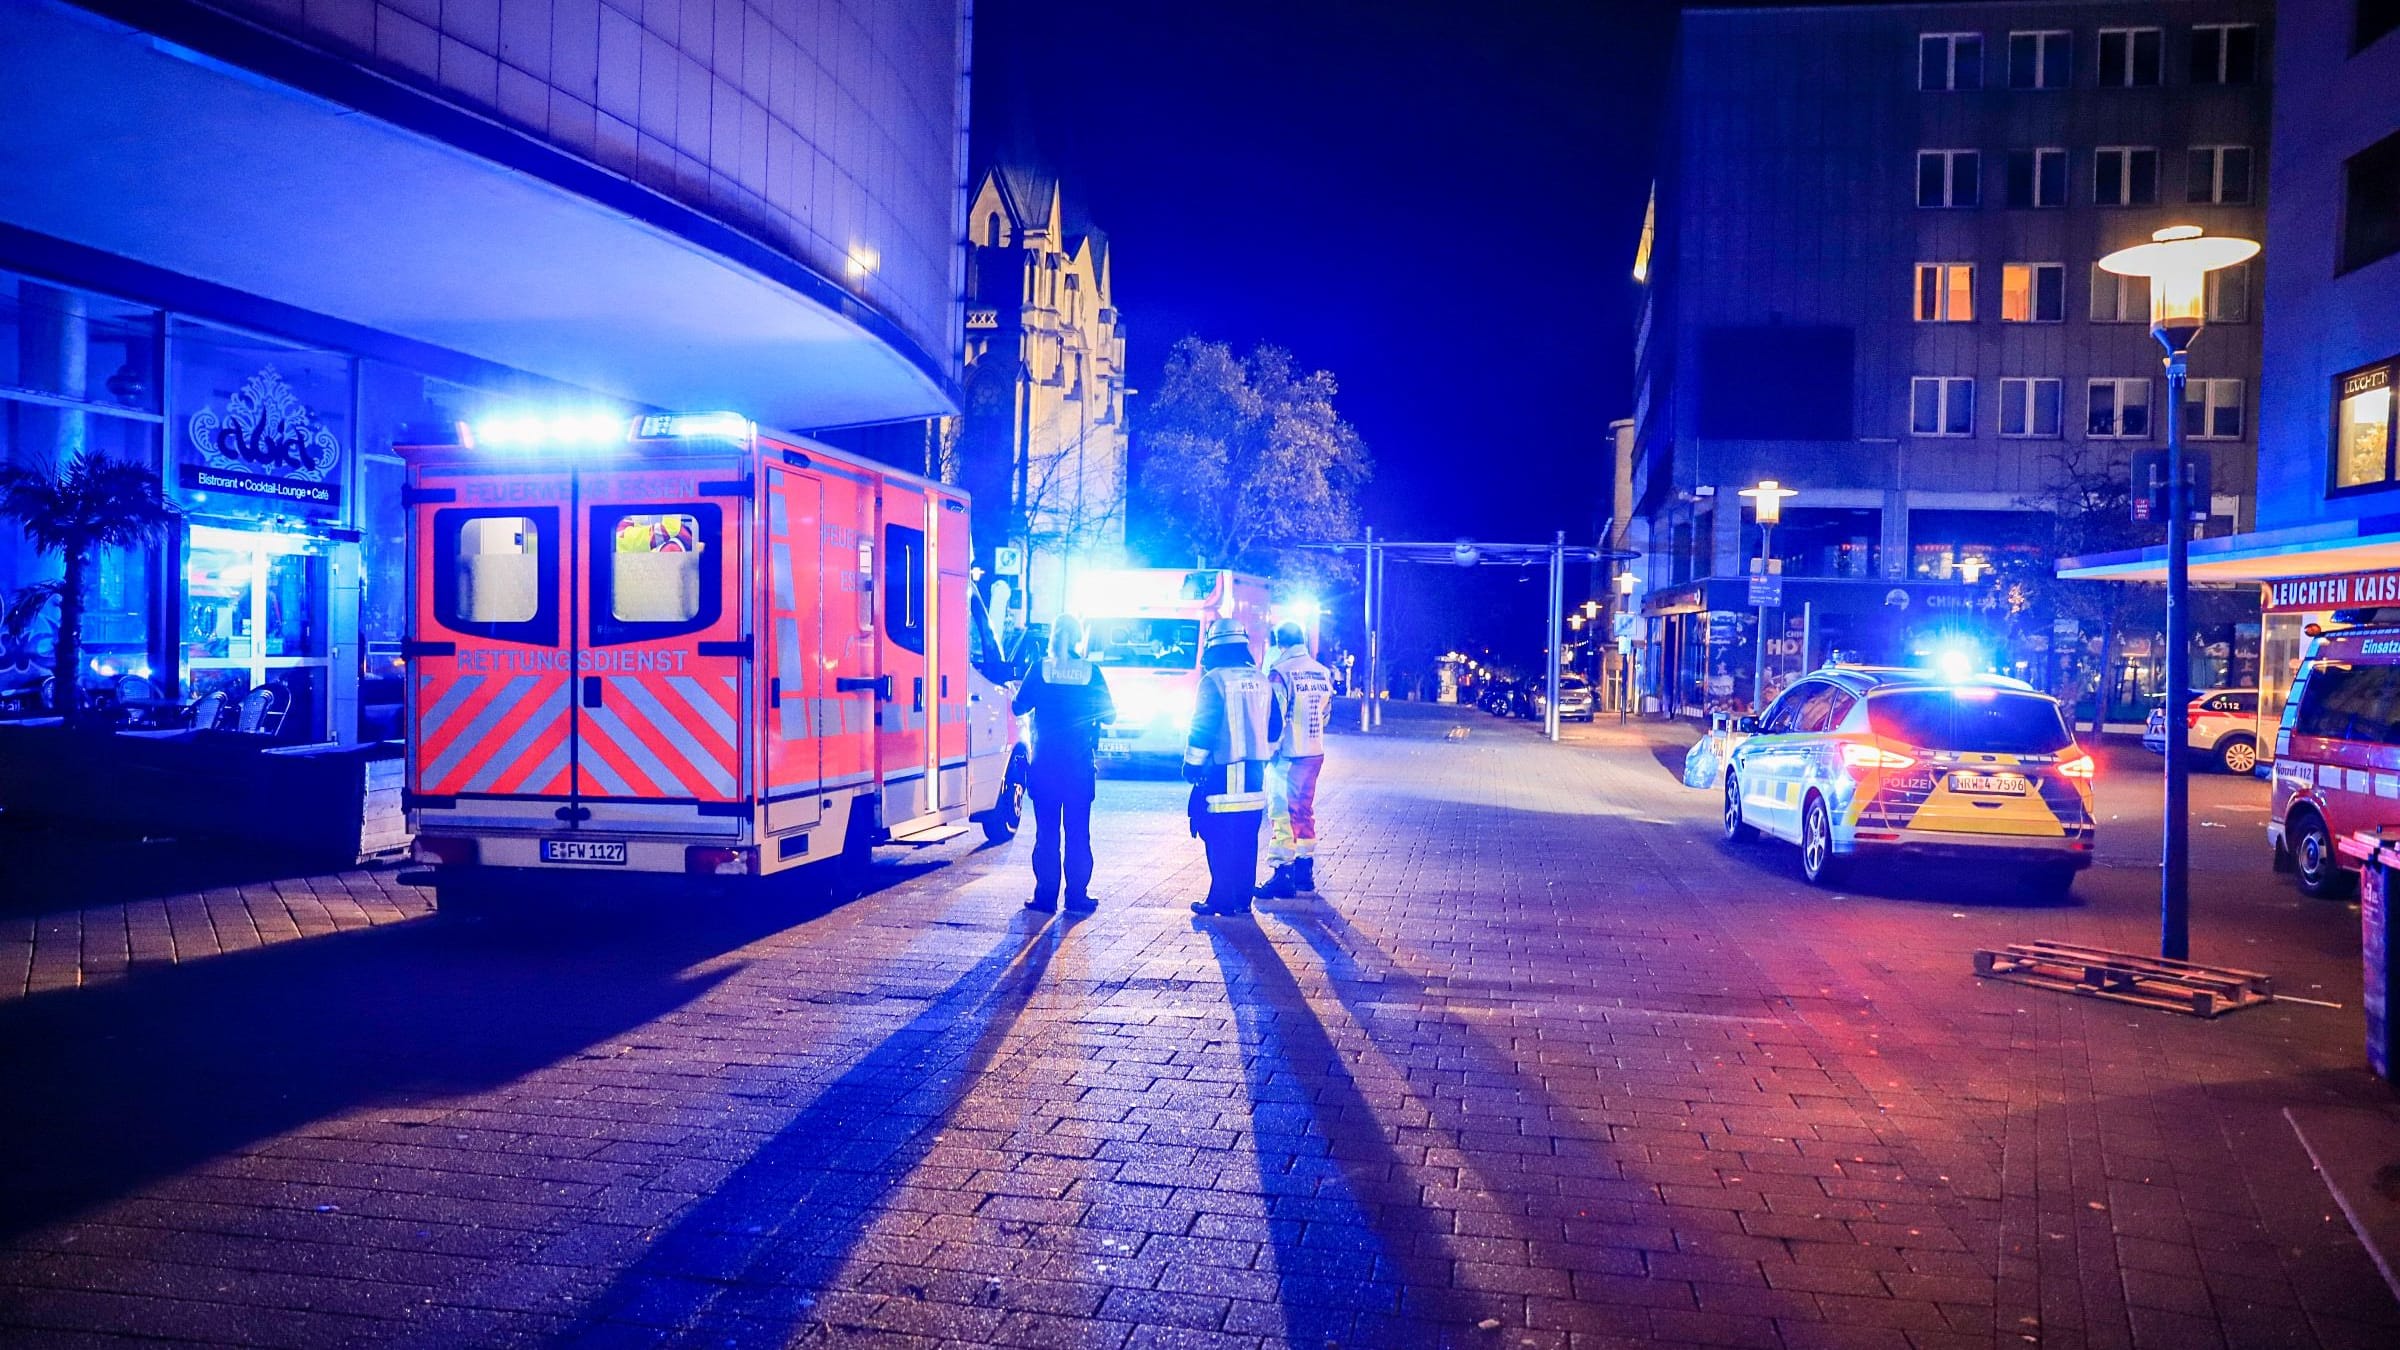 Essen: Partygäste in Club angegriffen – mehrere Verletzte